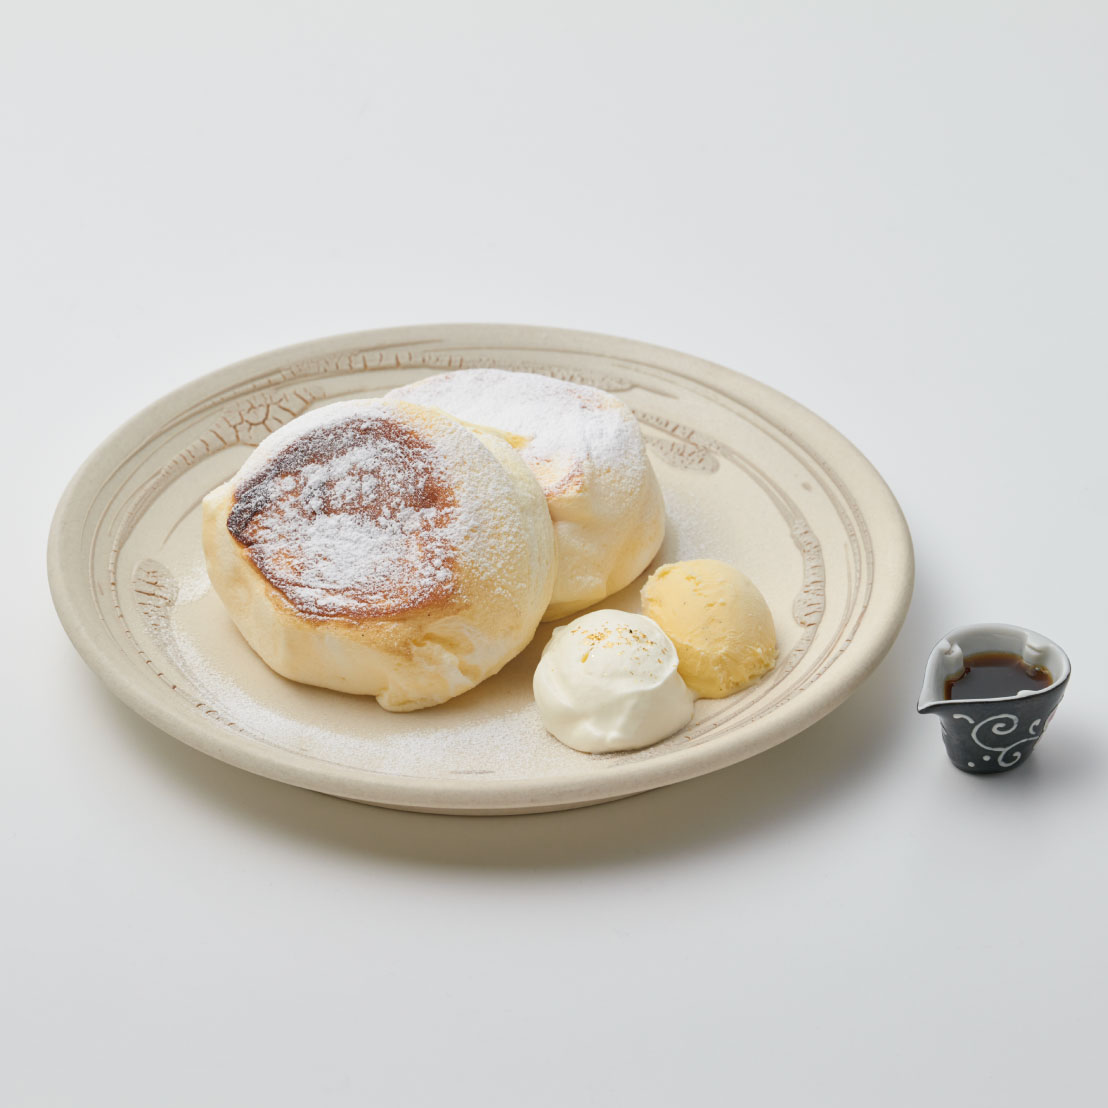 石川県産コシヒカリ米粉を使った「たもん」のパンケーキ<br><span>Tamon pancakes made with Ishikawa-grown Koshihikari rice flour</span><br>¥1300